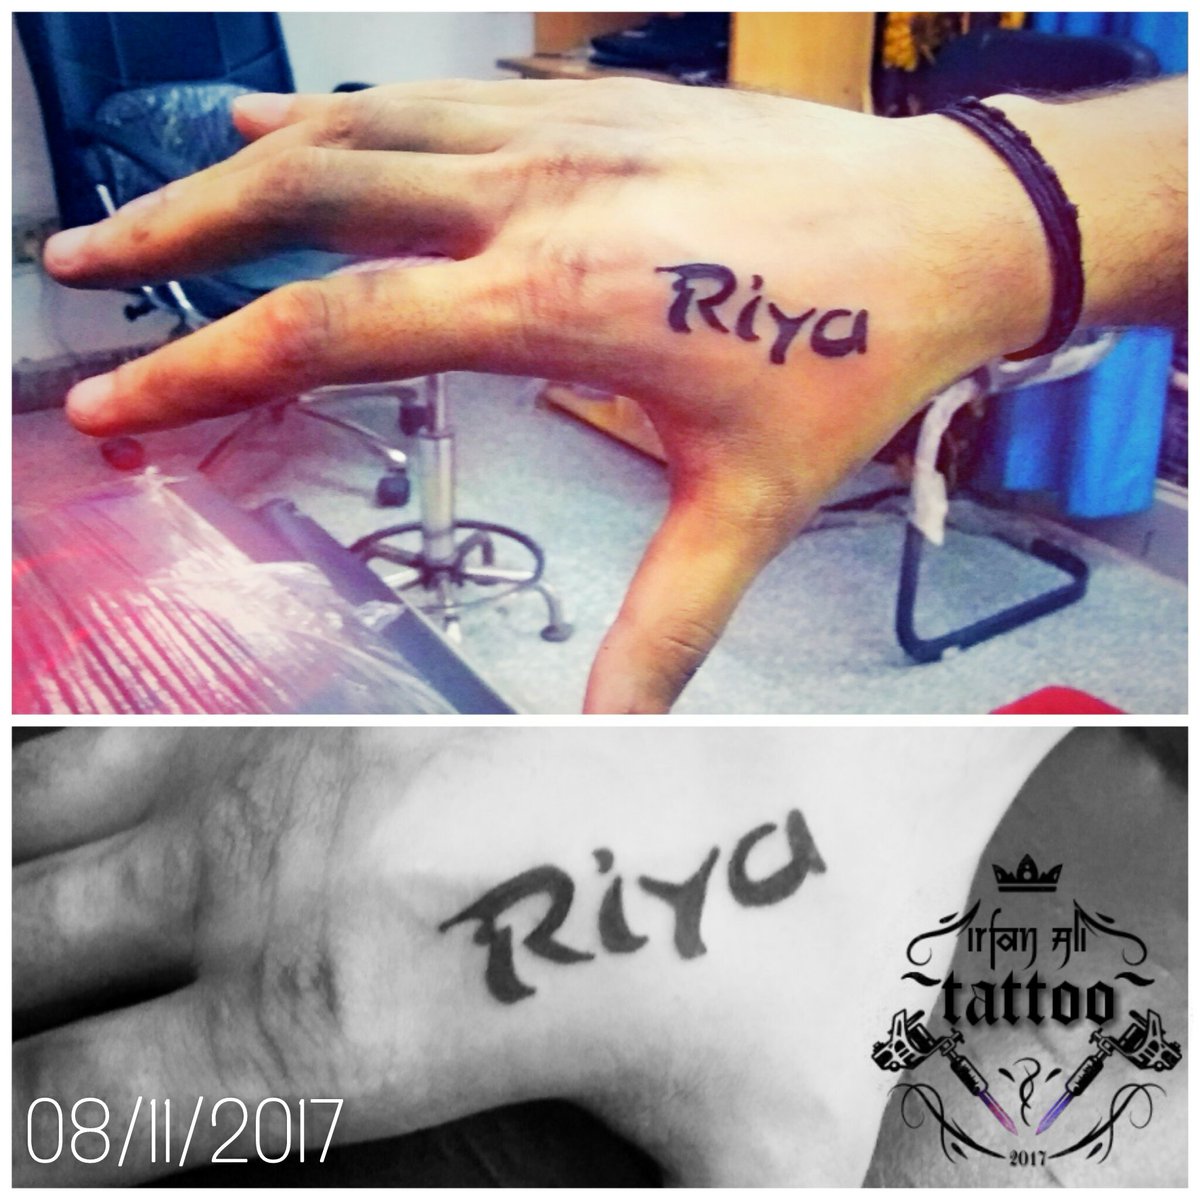 Irfan Ali Tattooz on Twitter Riya name Tattoo Done by me   httpstcoFKN4r0MIaZ  Twitter